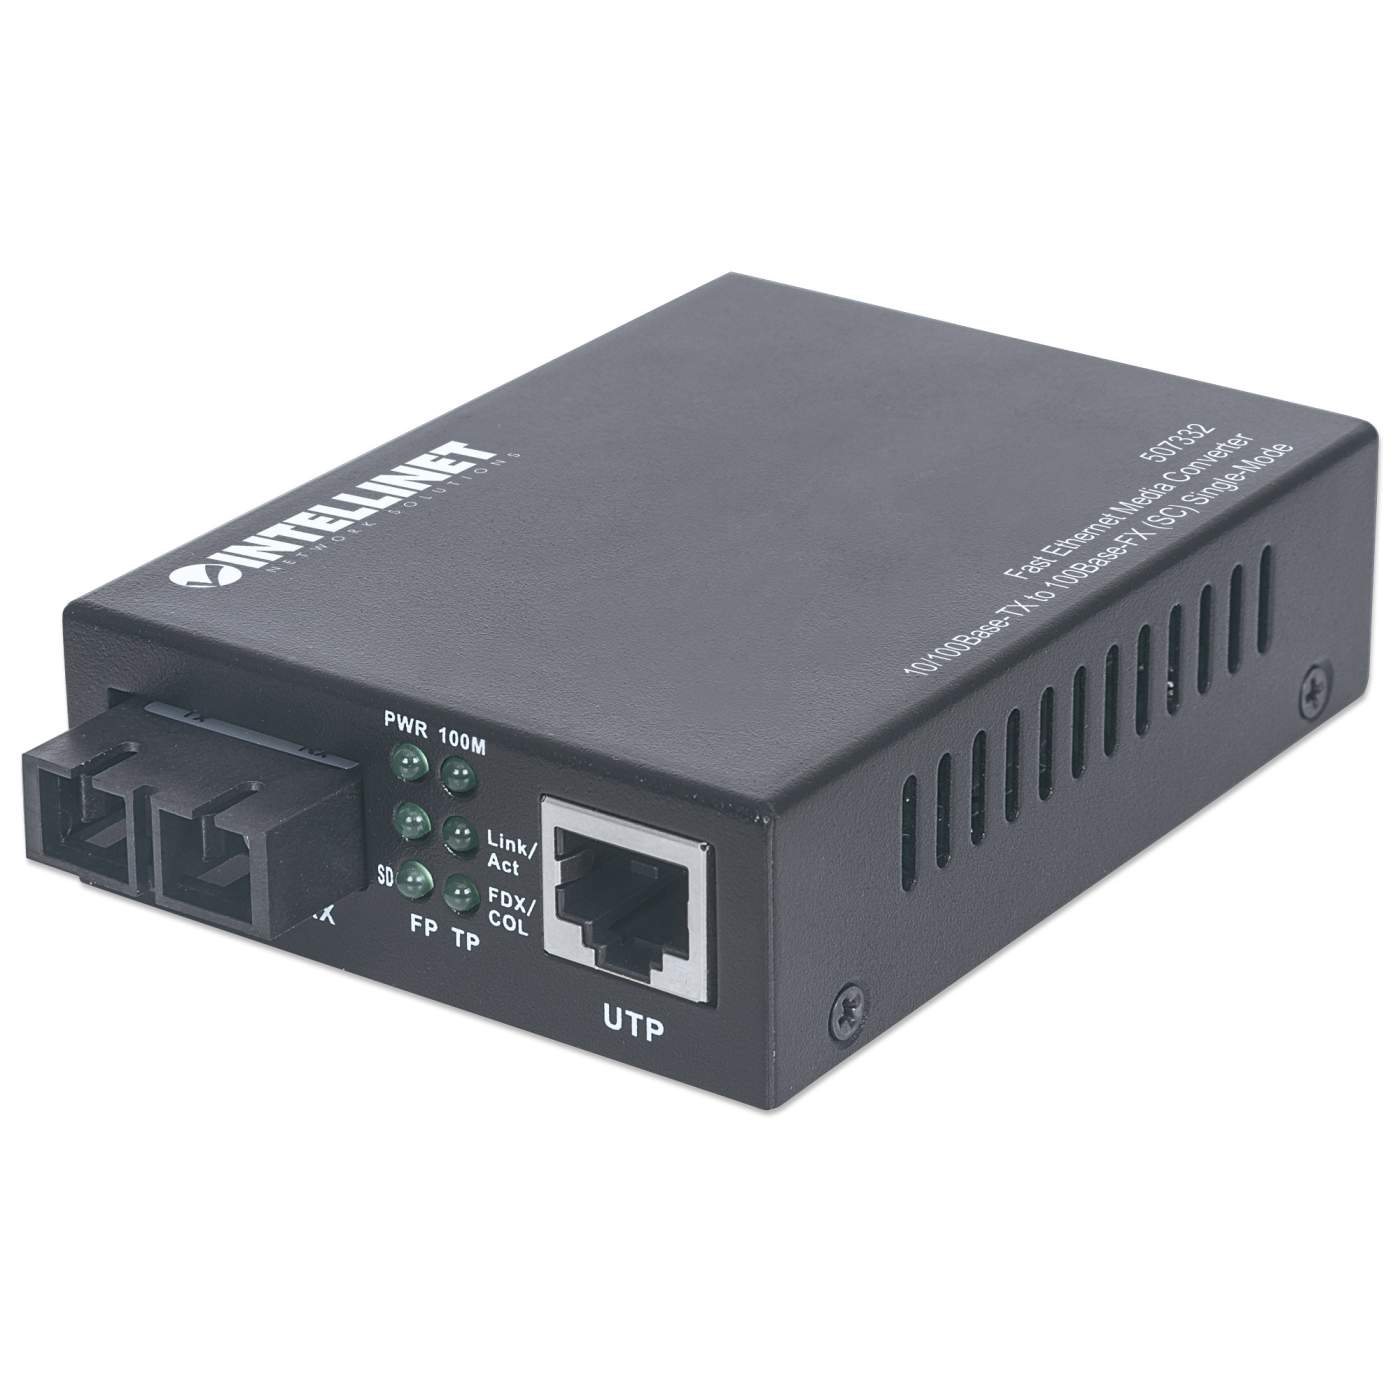 Fast Ethernet Single Mode Media Converter Image 1